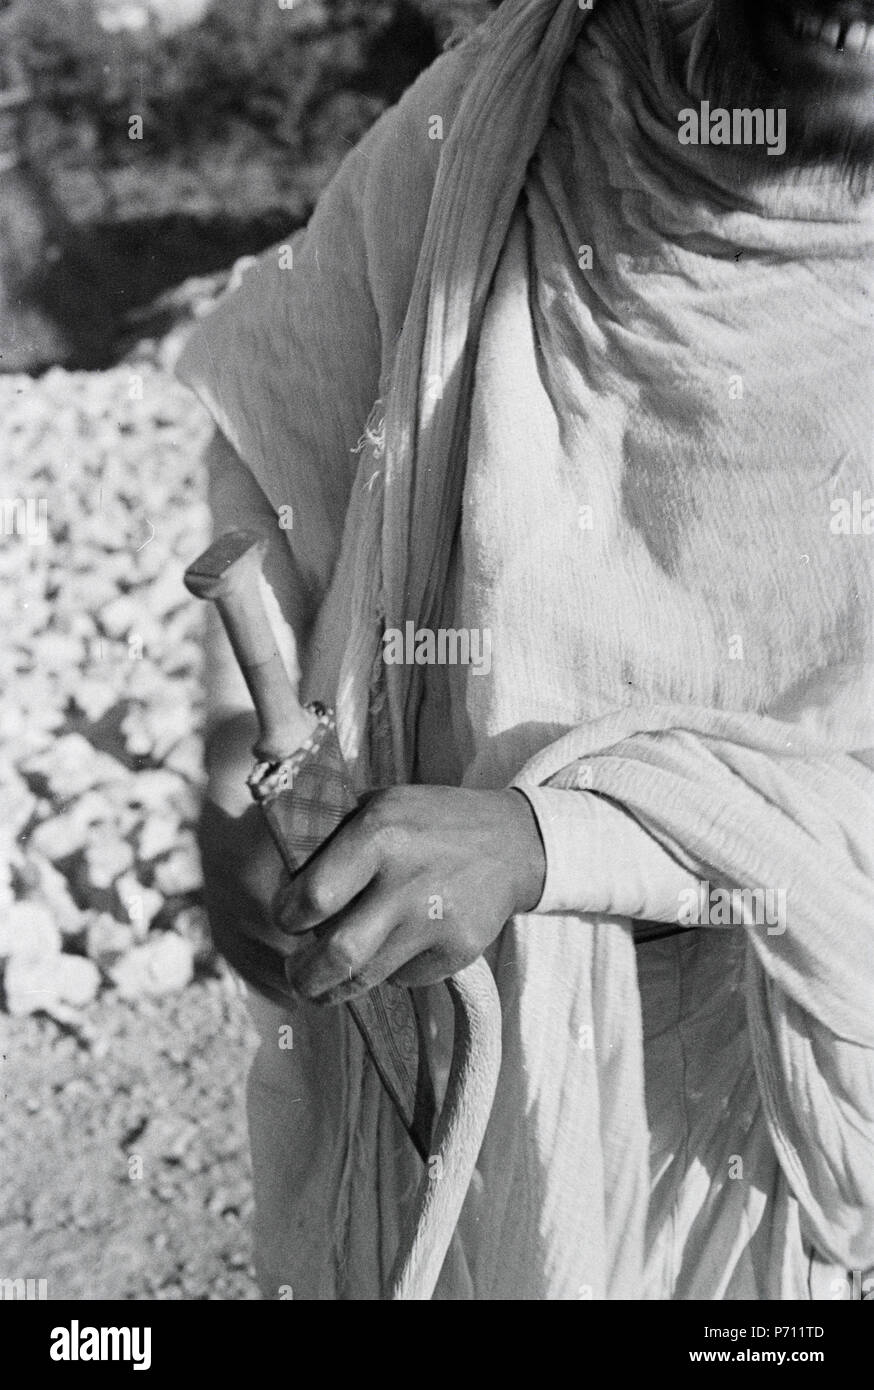 40 ETH-BIB-Abessinier mit Messer in der Hand-Abessinienflug 1934-LBS MH02-22-1117 Stock Photo